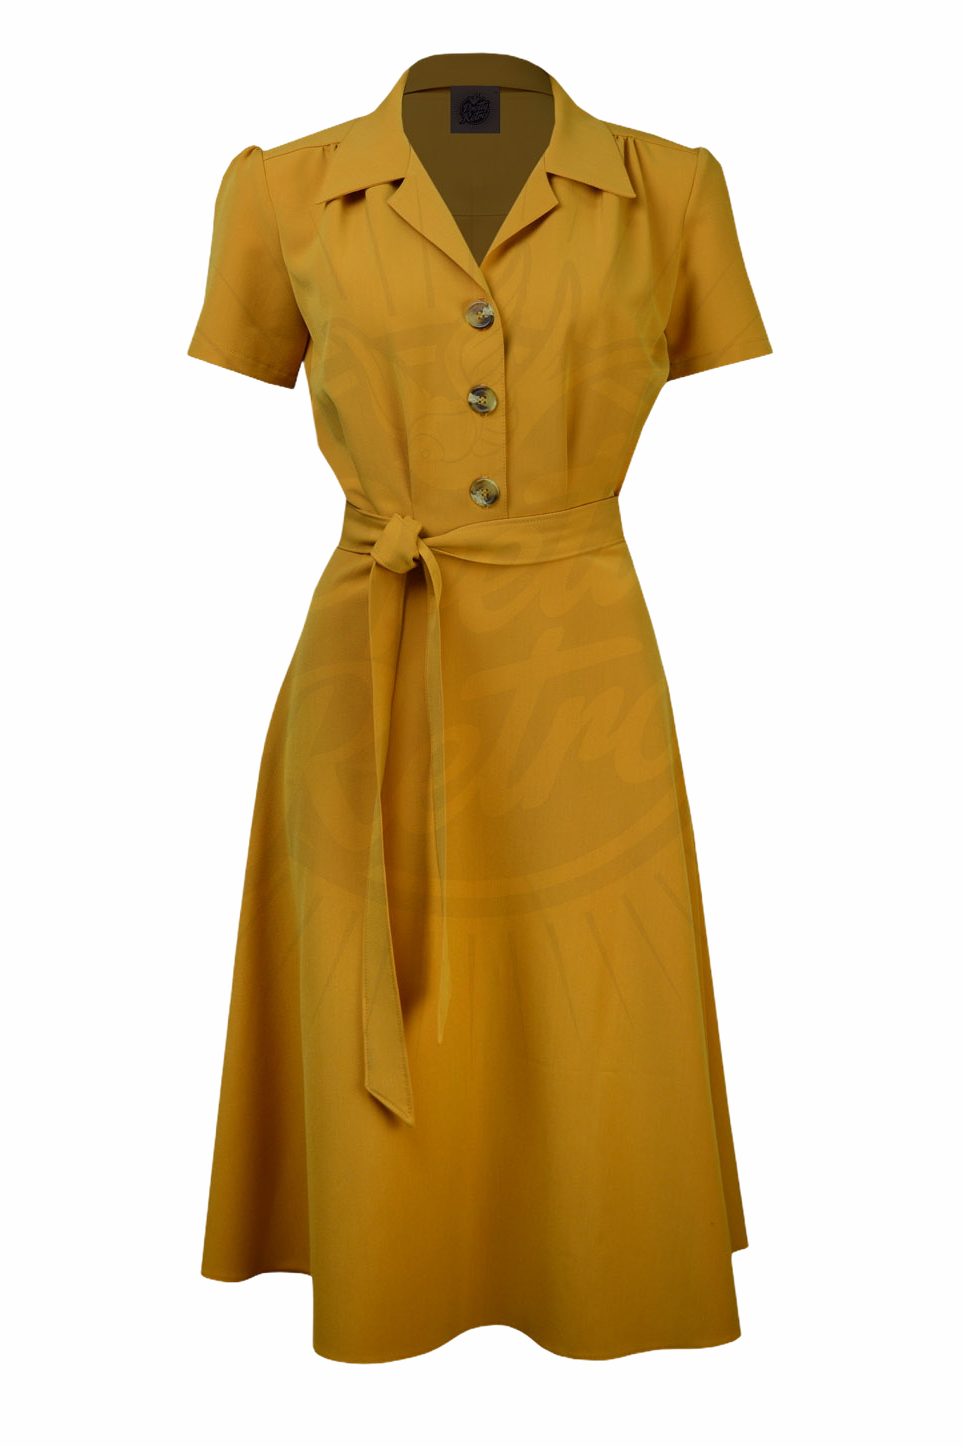 Pretty Retro Shirt Dress - Mustard-Pretty Retro-Sophies.dk